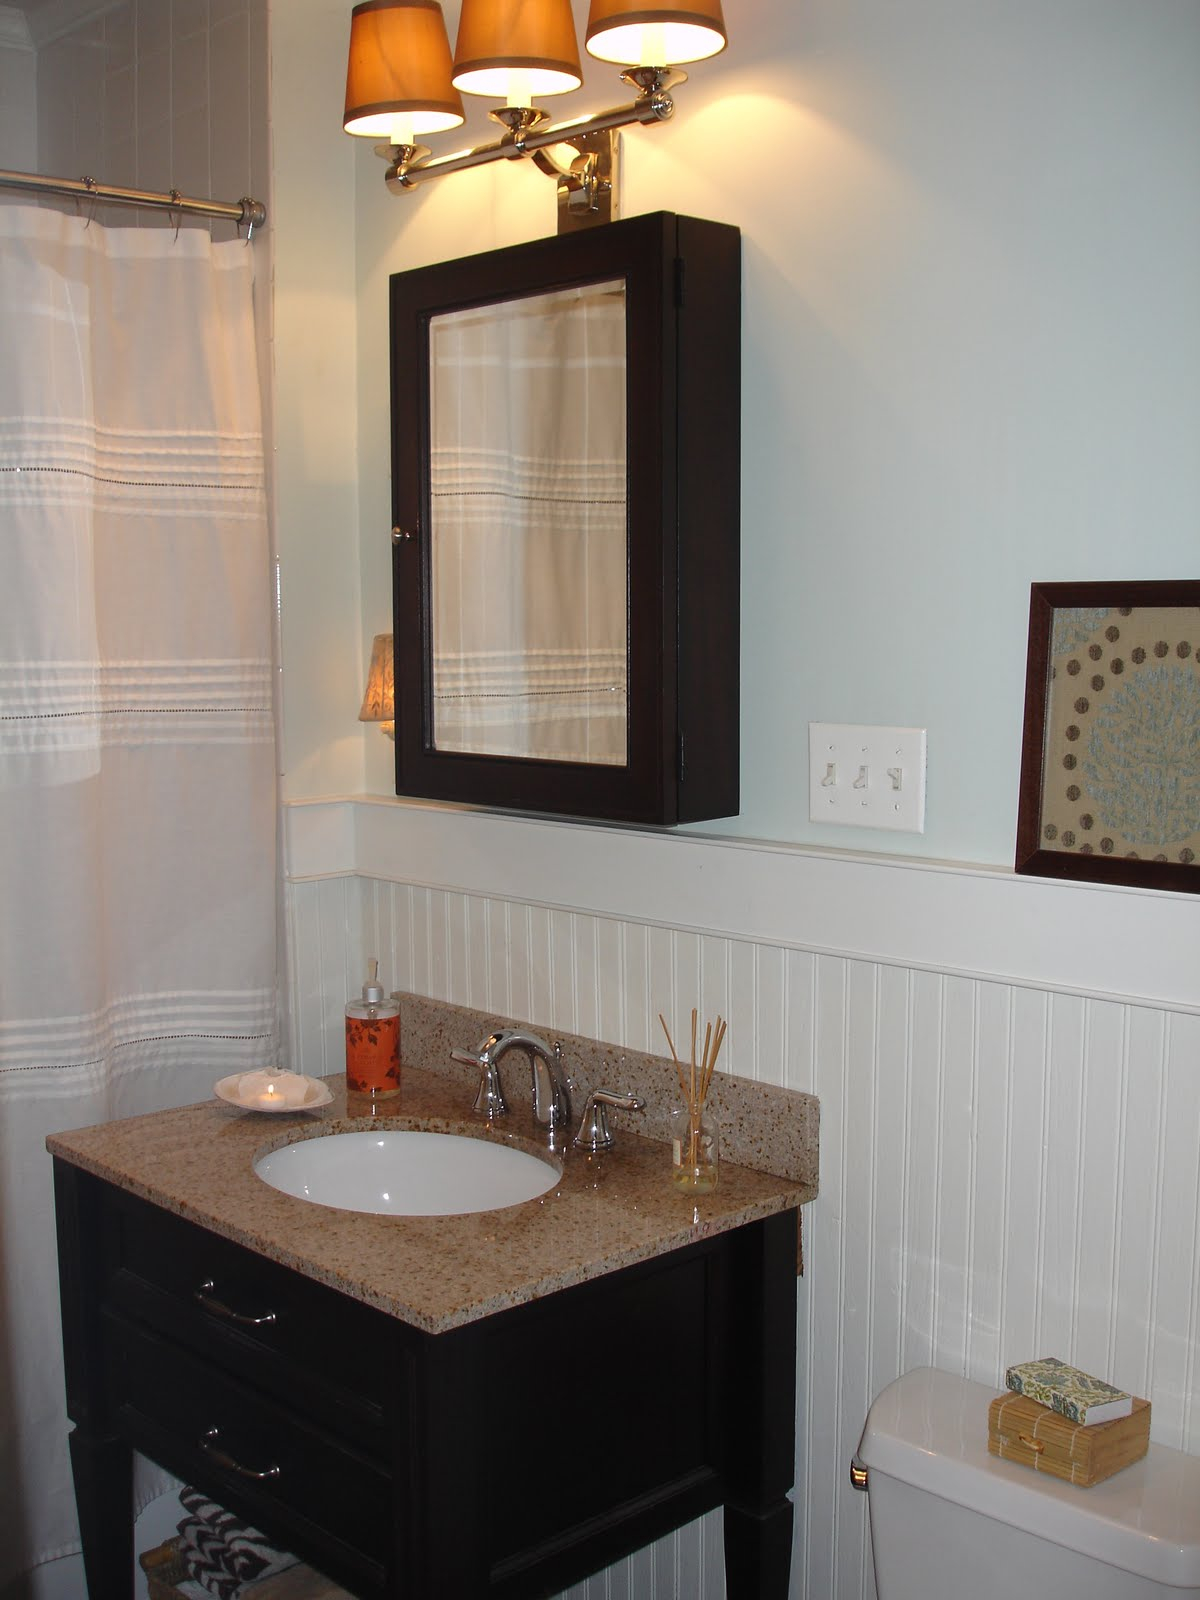 Mesmerizing Mirrored Bathroom Vanity Medicine Cabinets Home Cabinet regarding proportions 1200 X 1600